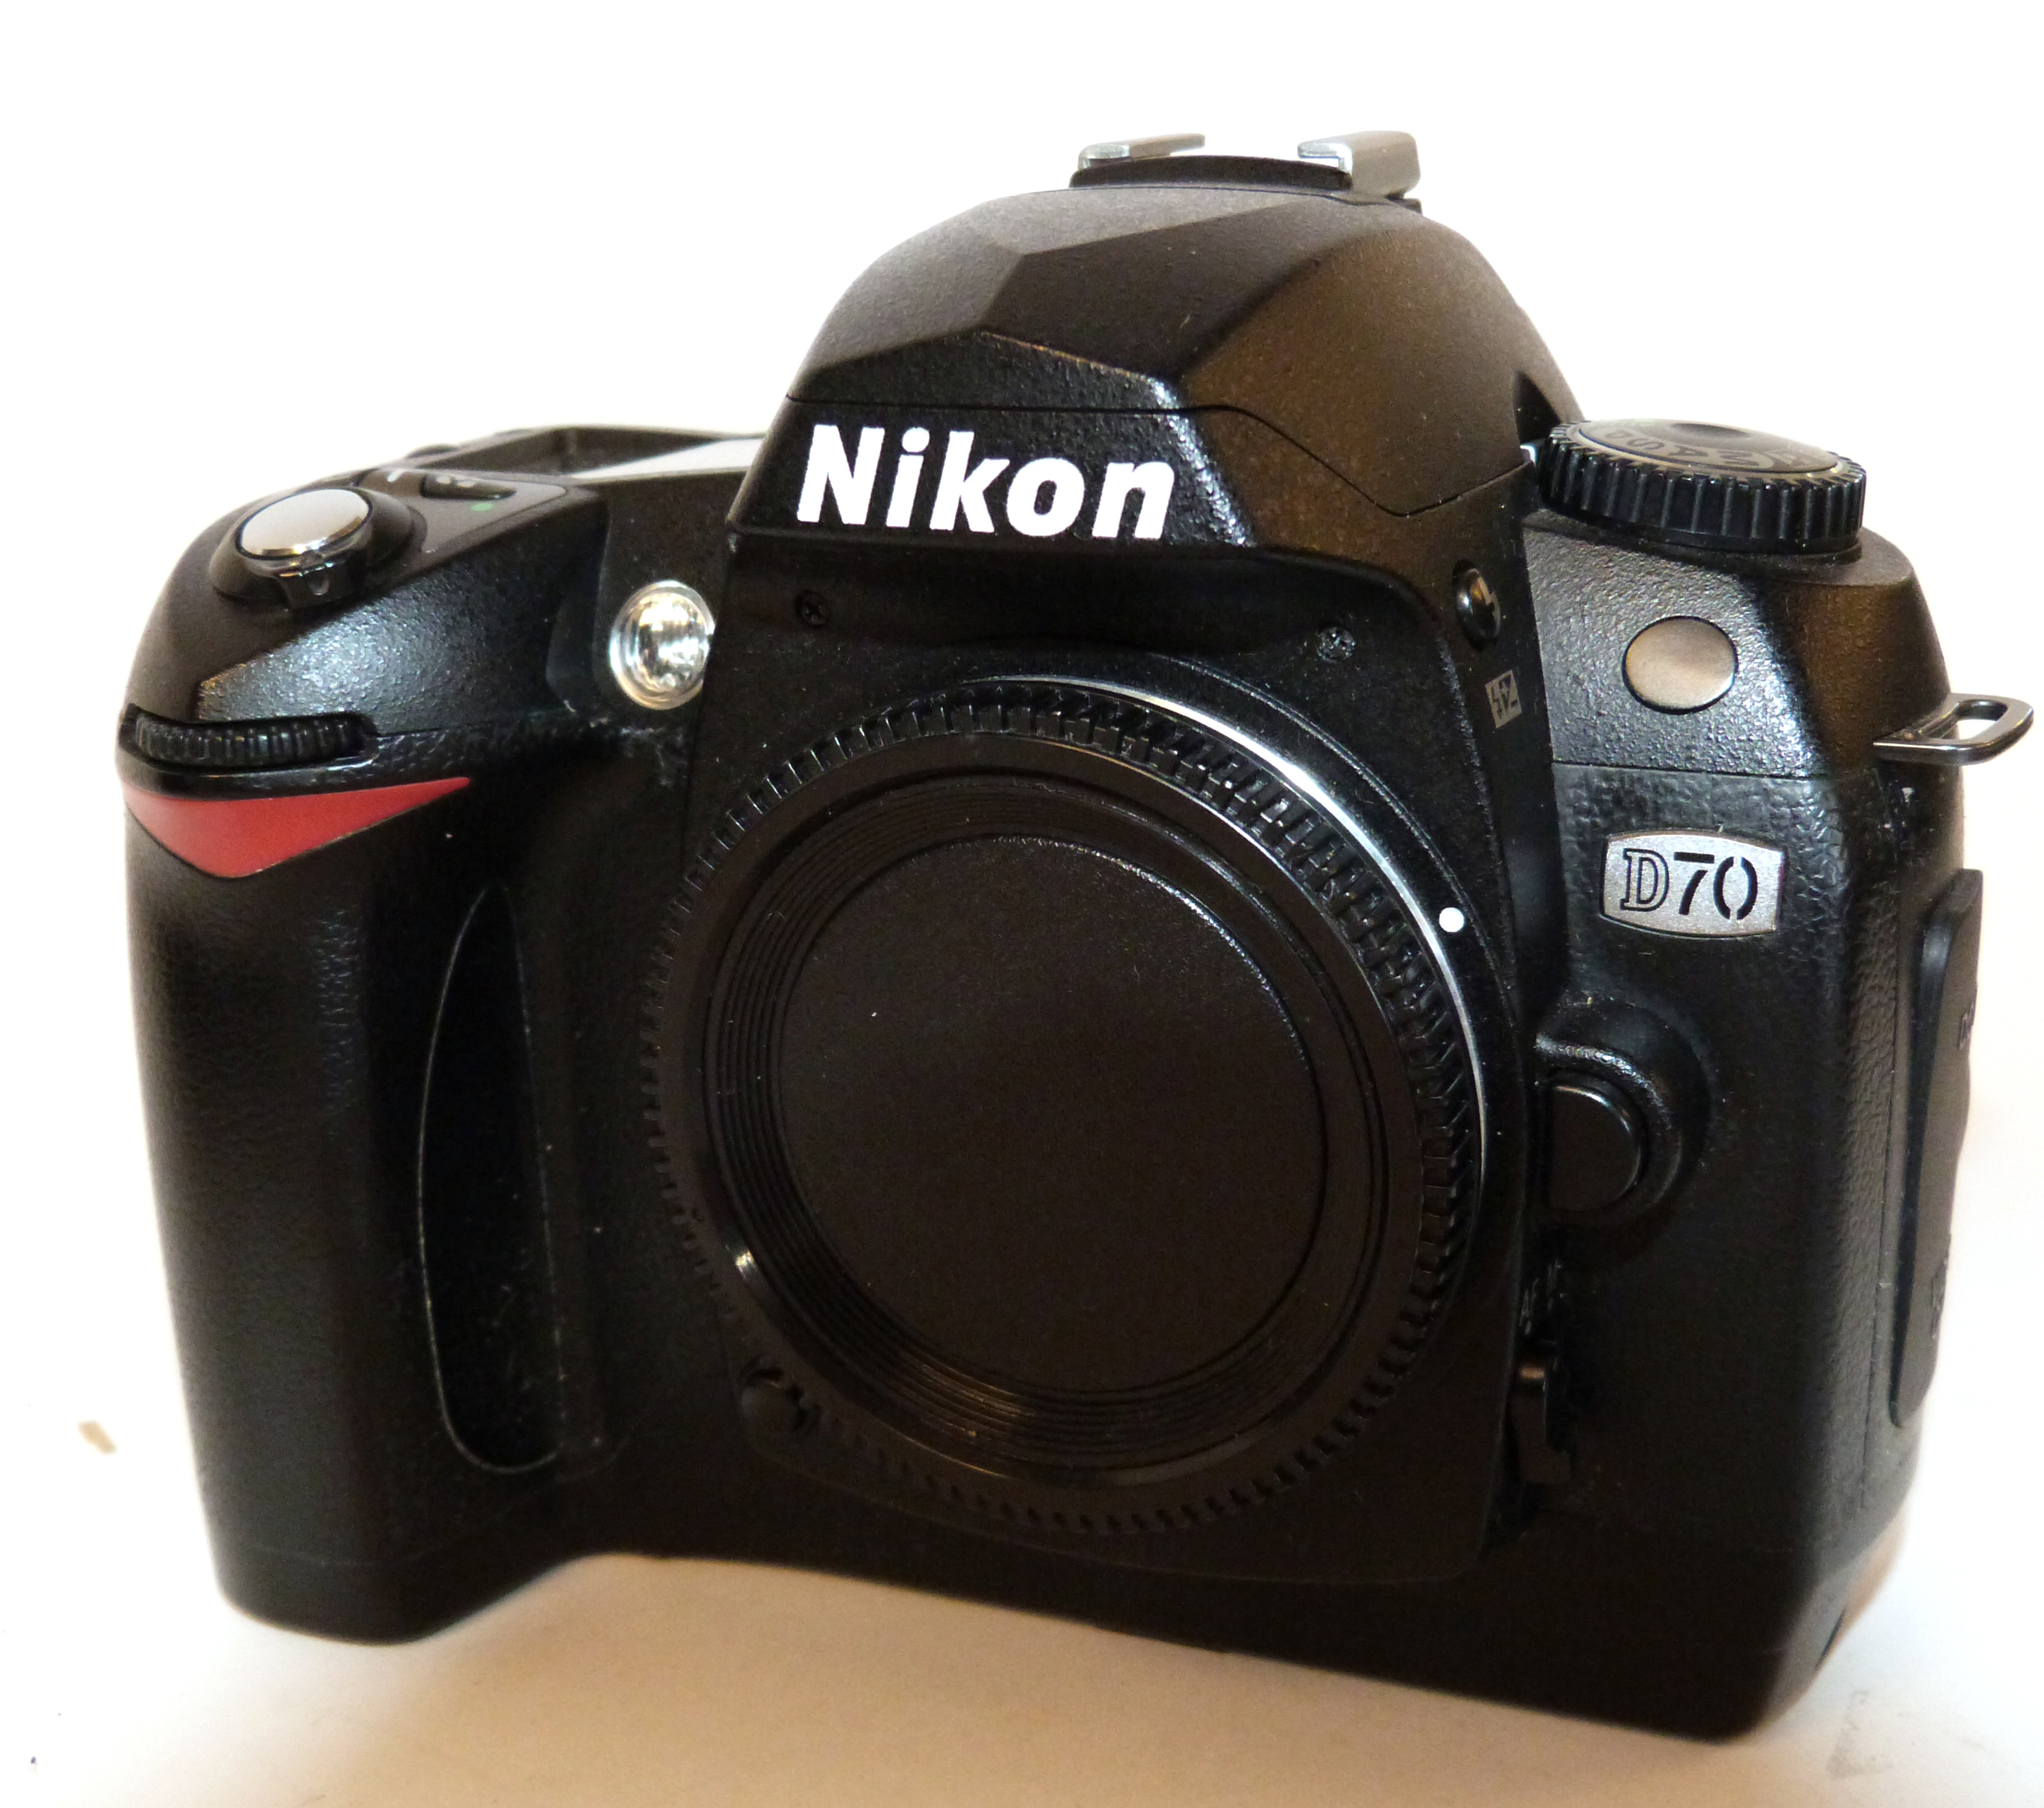 Nikon D70 digital camera together with Nikon AF-S Nikkor 18-70mm lens, charger and fitted case - Image 2 of 6